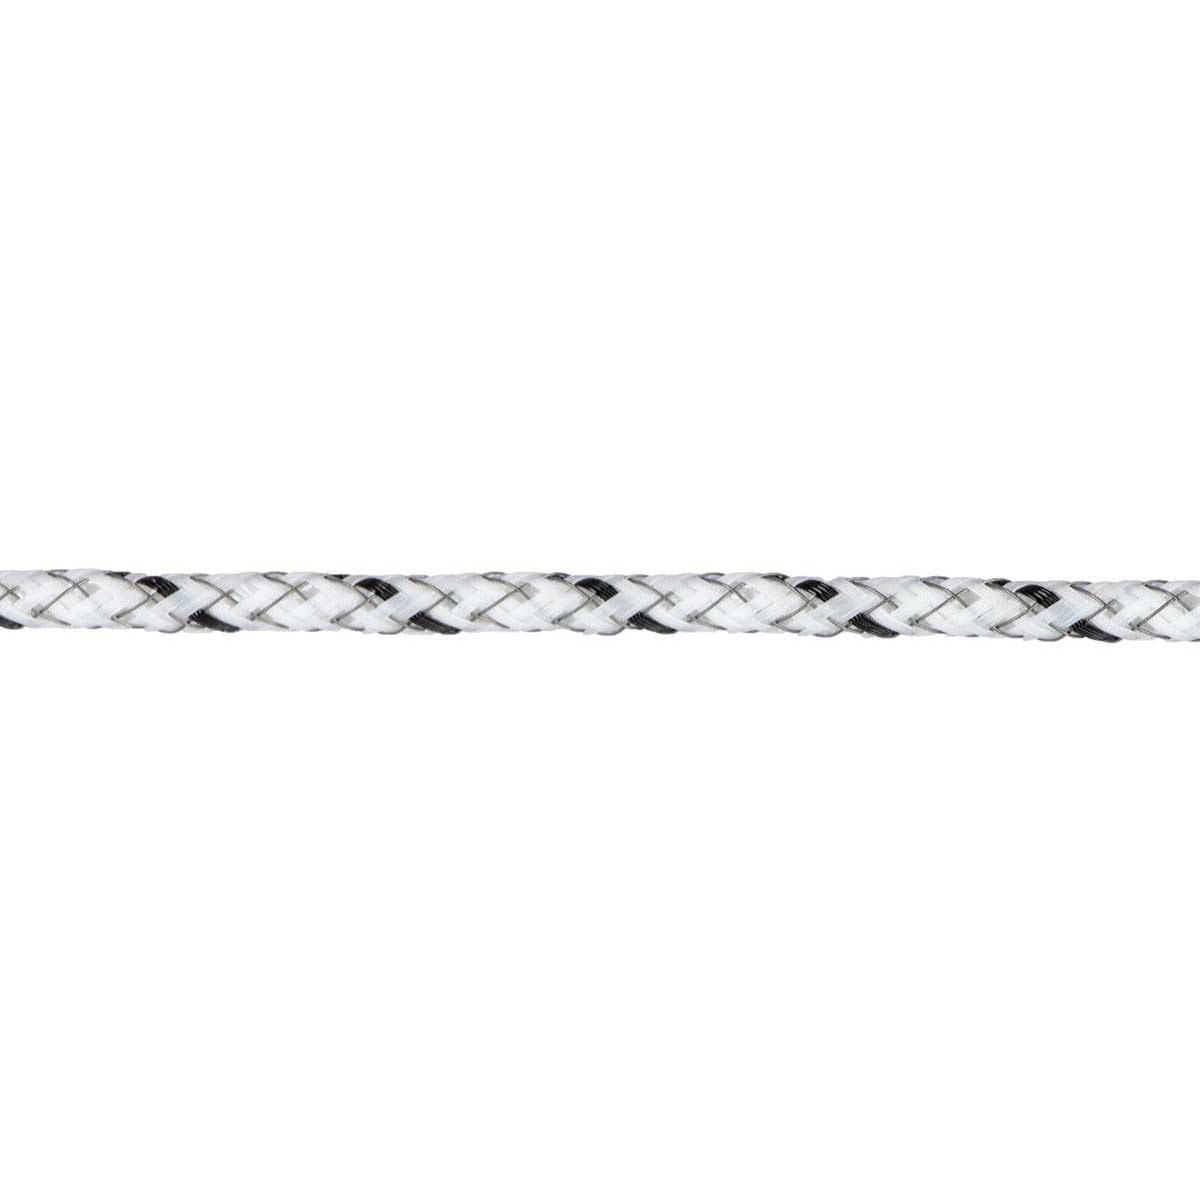 Ako villanypásztor kötél TopLine Ultra 300m, Ø 5.5mm, 6x0.30 TriCOND, fehér-fekete